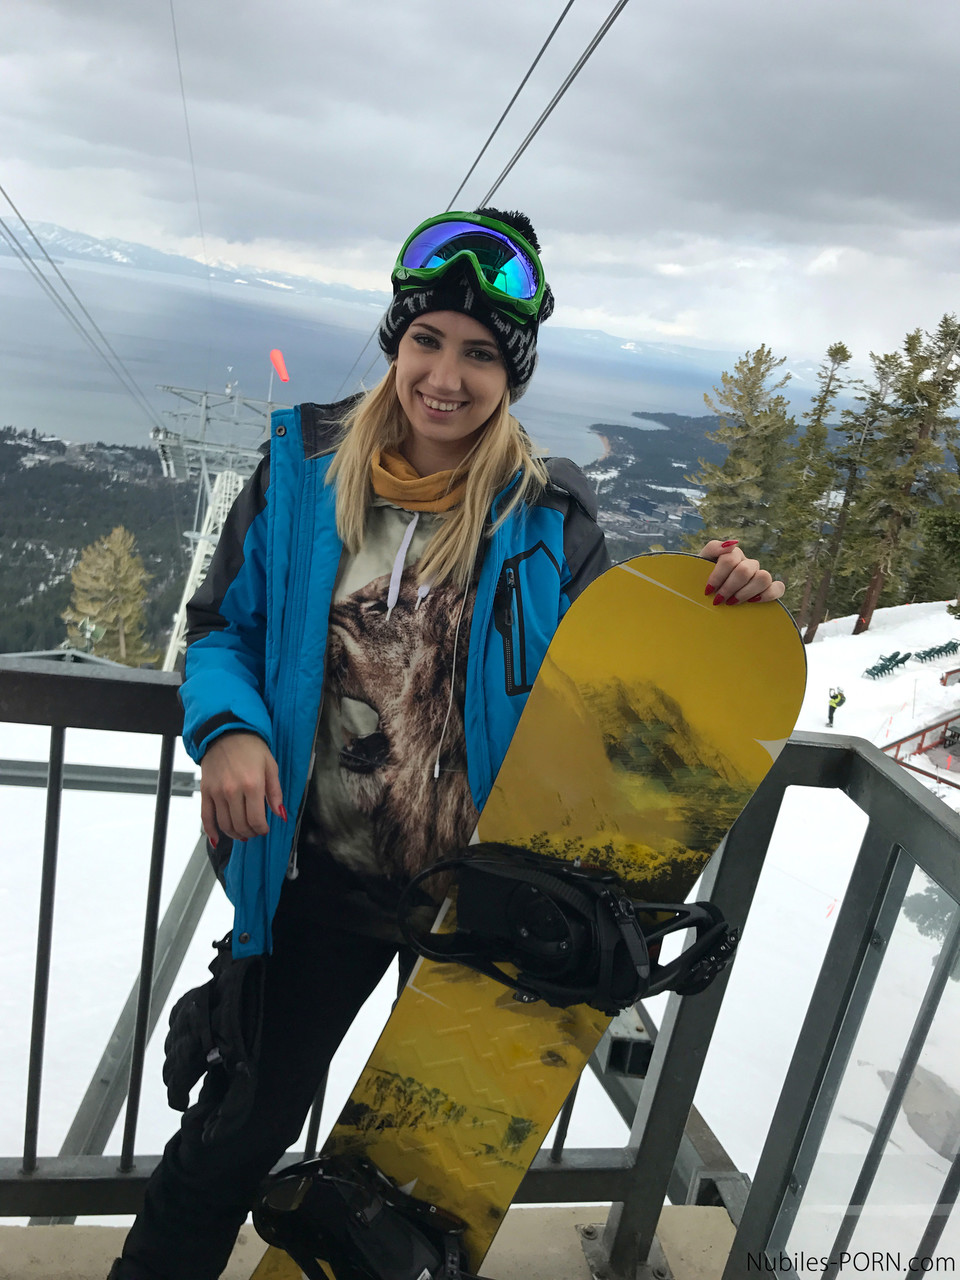 Sexy snowboarders Sierra Nicole & Kristen Scott have pre-FFM fun on the slopes foto porno #427844631